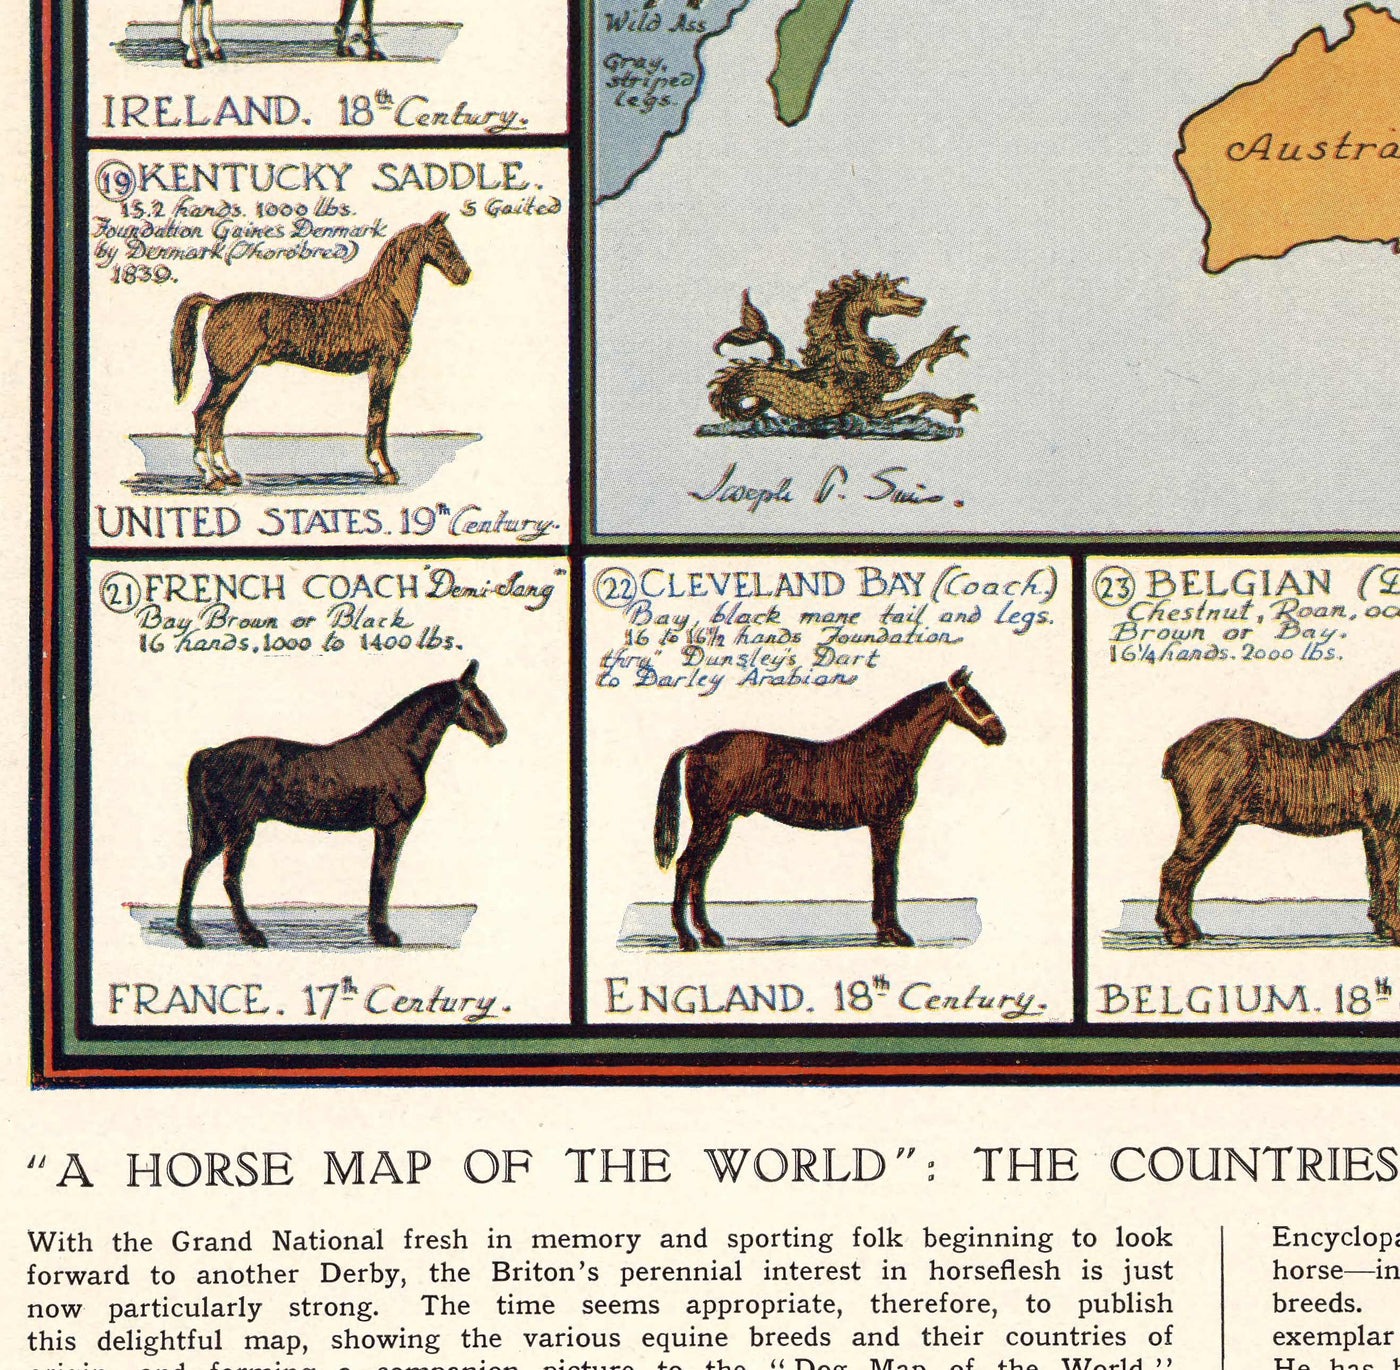 Old Horse Map, 1936 - Old World Atlas Chart mit den Ursprüngen der Rassen - Vollblut, Mustang, Shire, Polo Pony, Araber